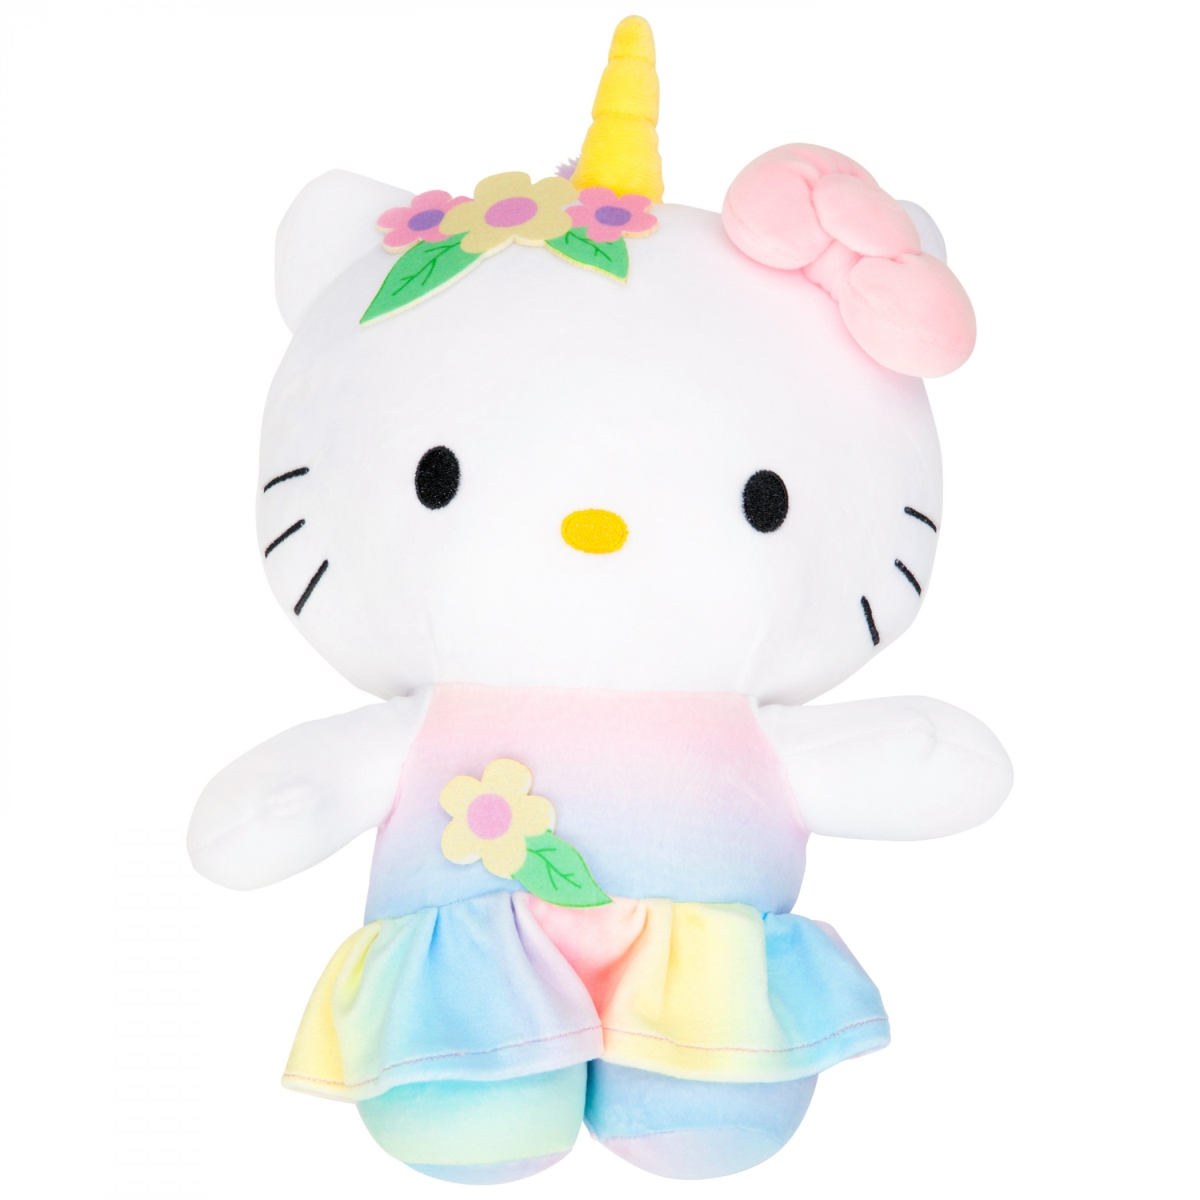 Hello Kitty 874238 Hello Kitty Unicorn Rainbow 12 Inch Plush Figurine Toy